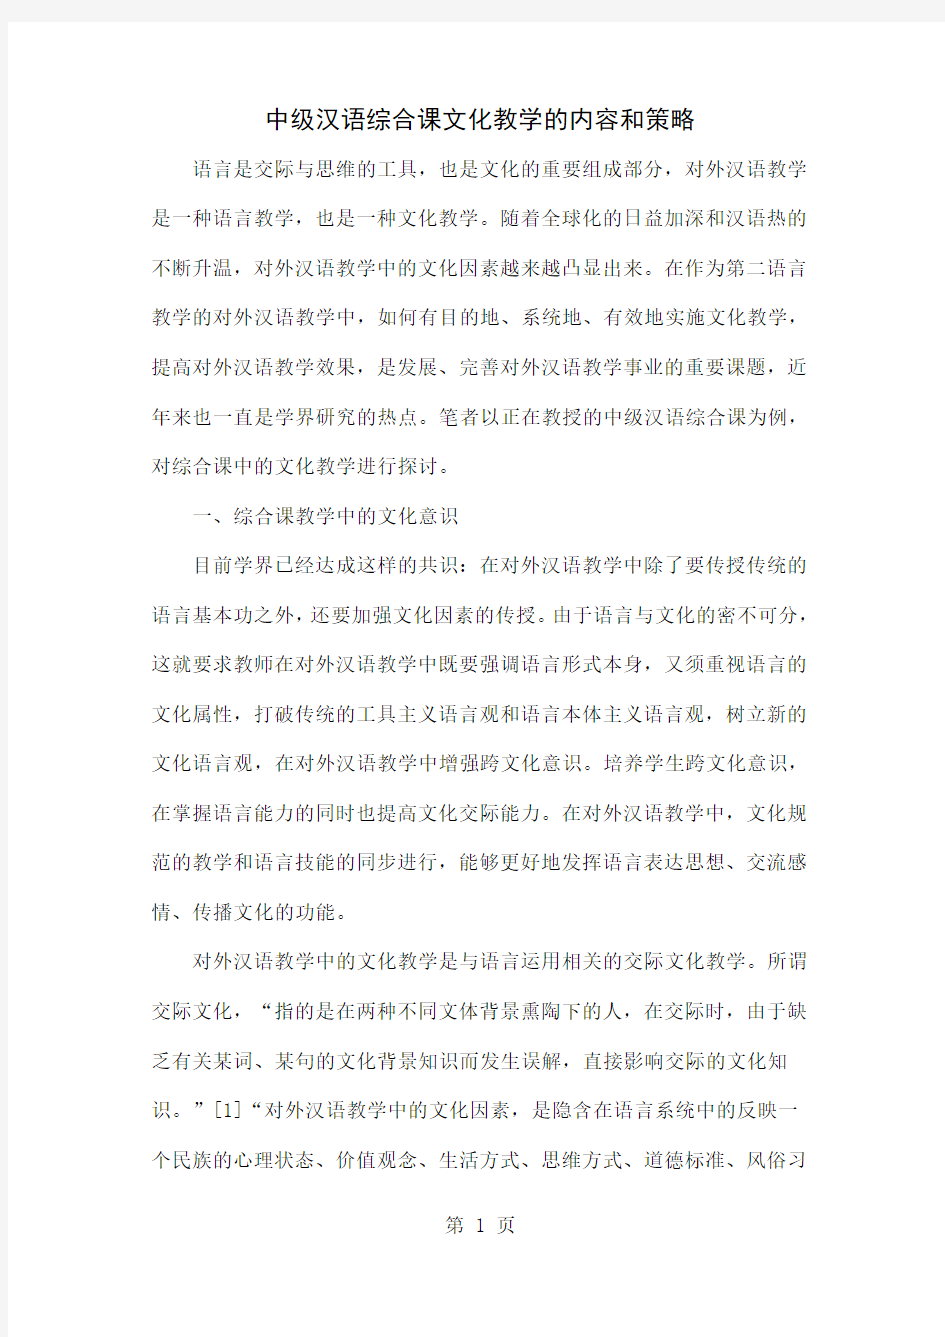 中级汉语综合课文化教学的内容和策略共10页文档